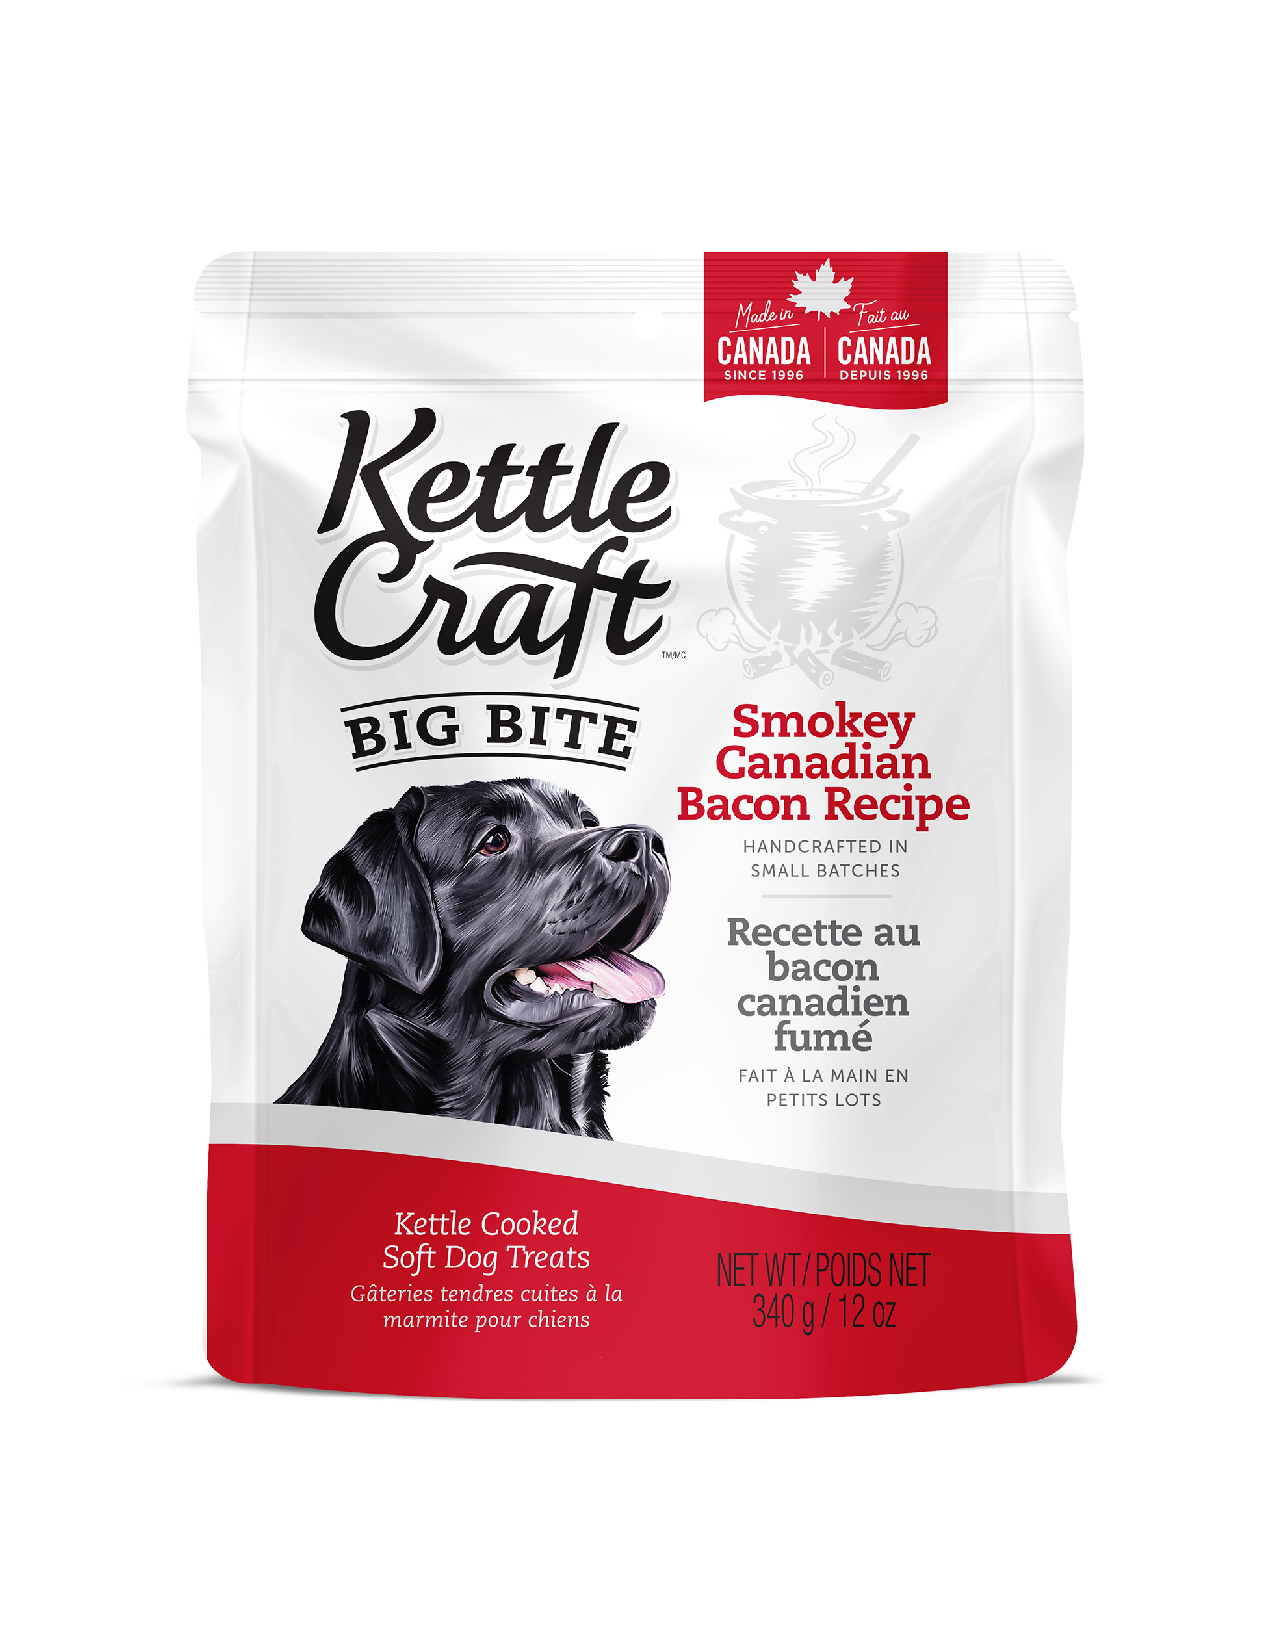 Kettle Craft Dog Treats Smokey Canadian Bacon Recipe